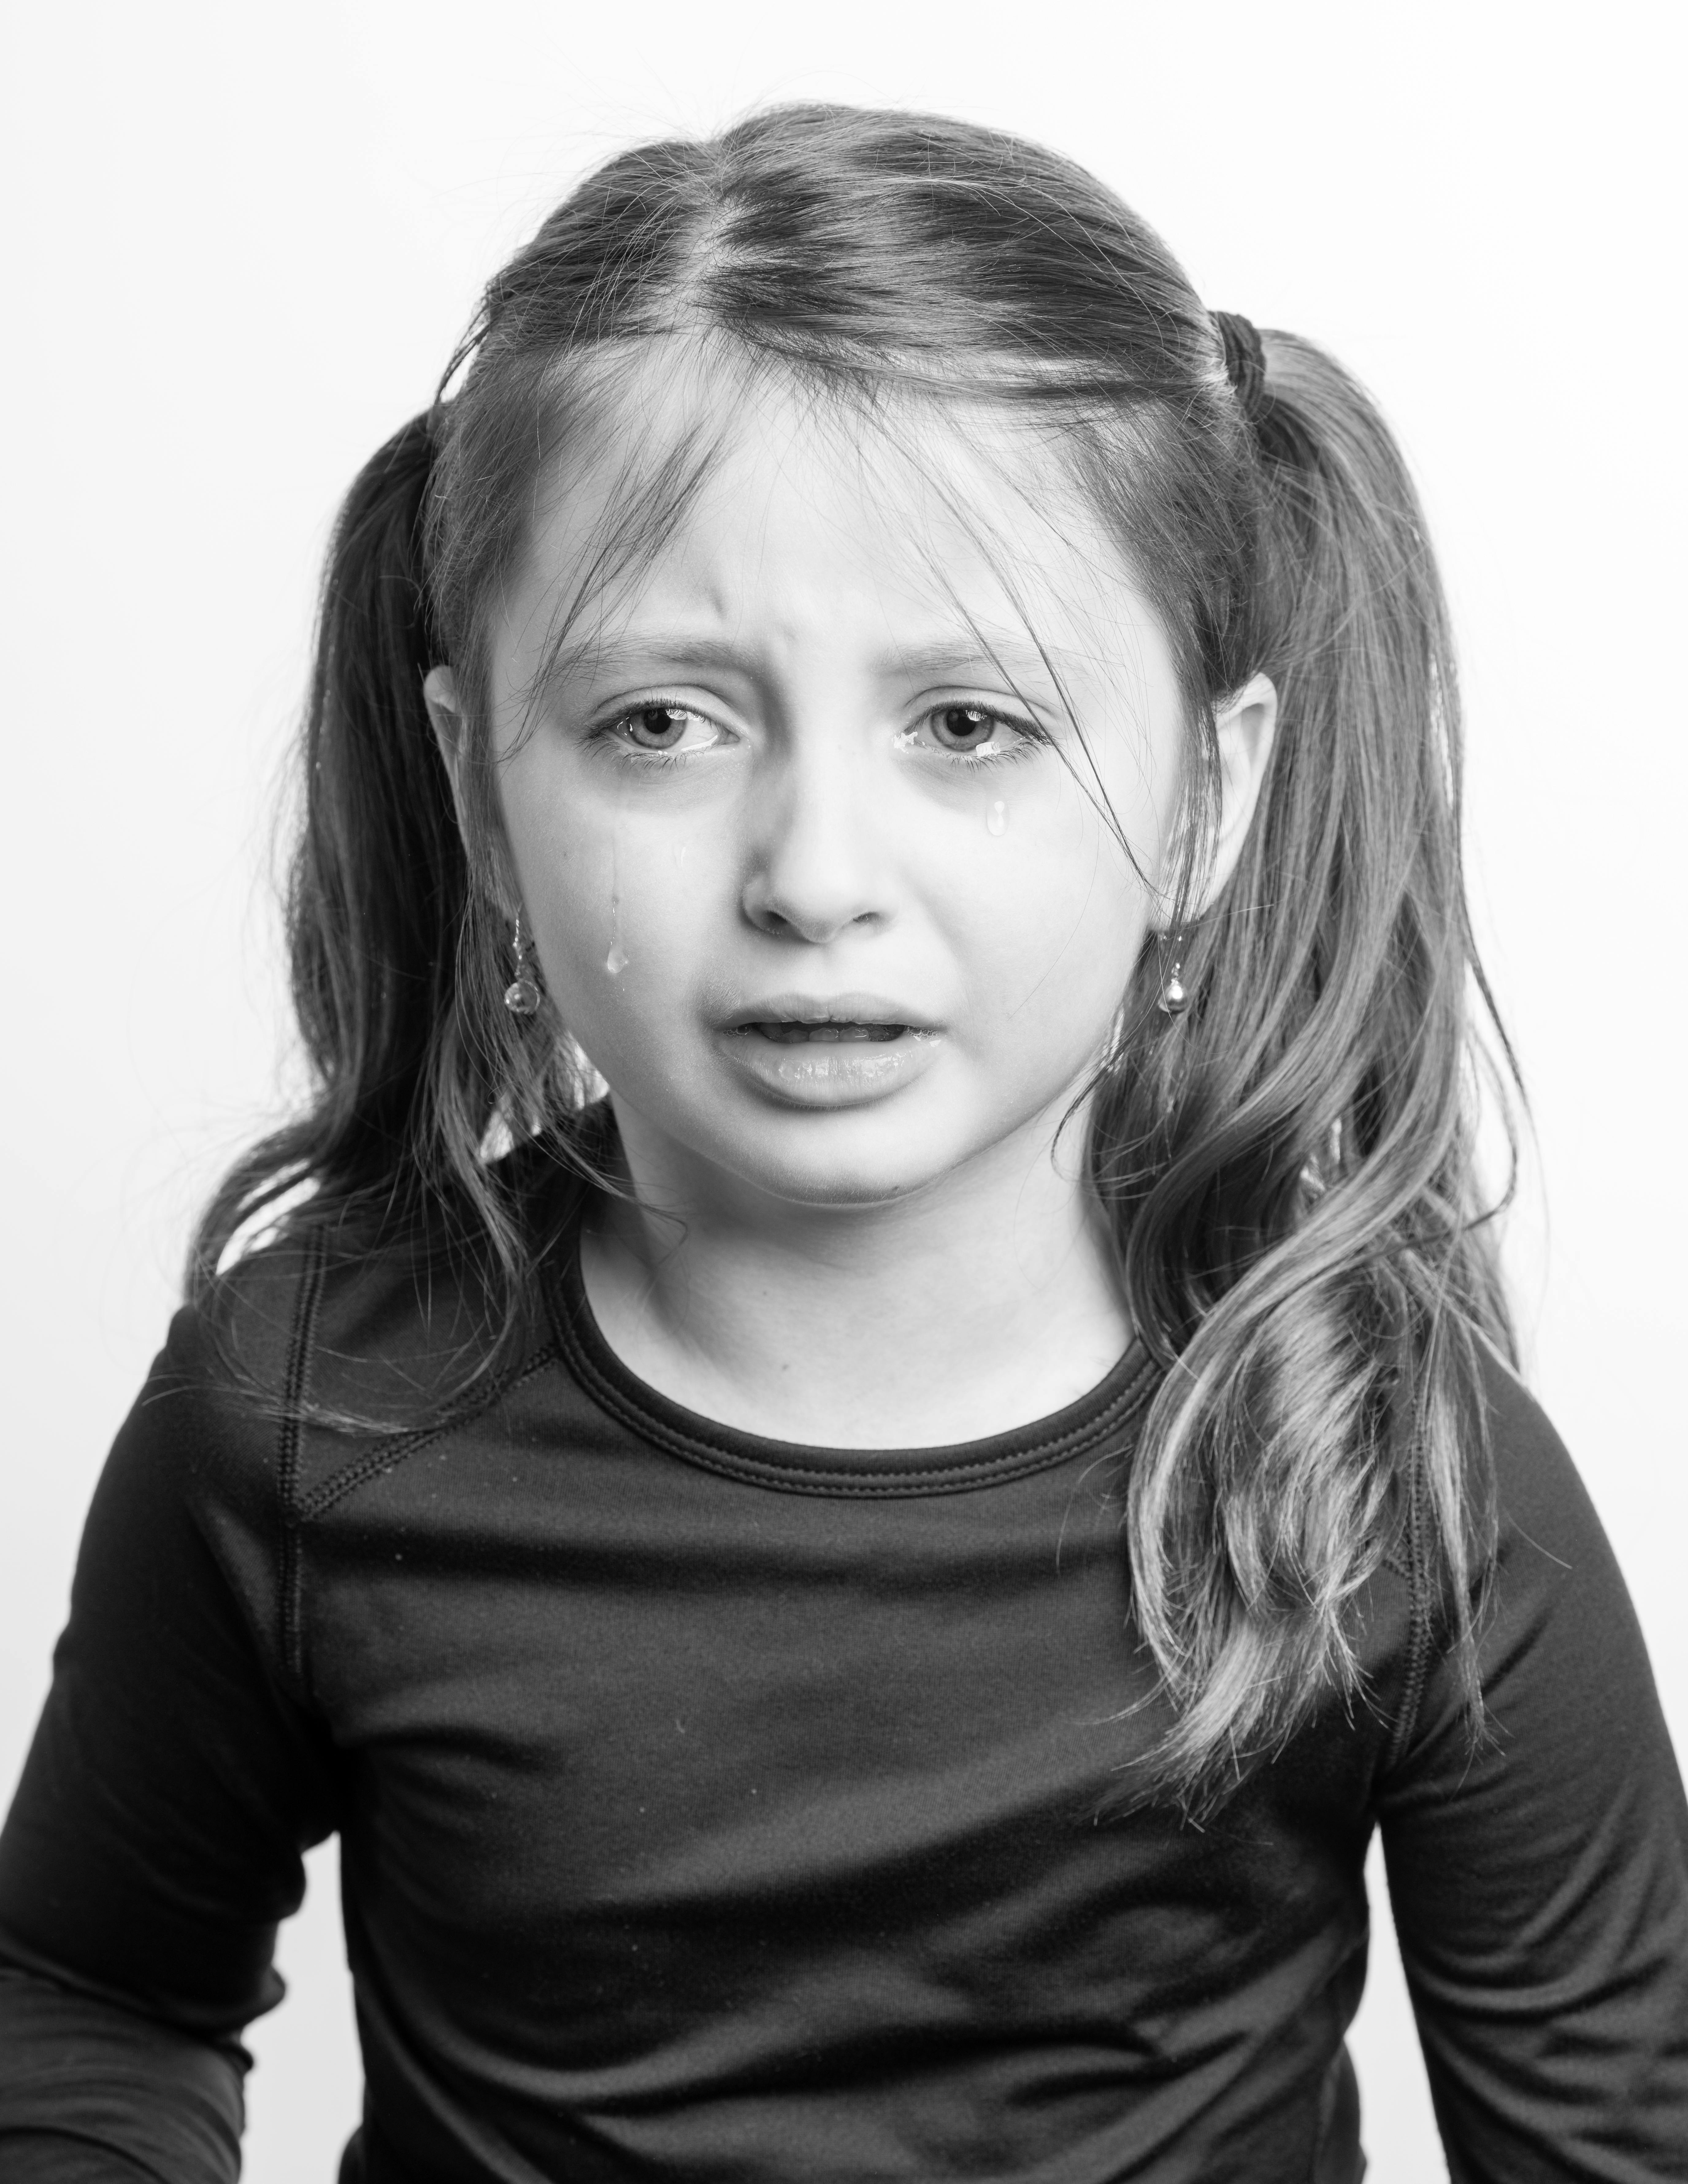 Une petite fille qui pleure et qui a l'air contrariée | Source : Pexels